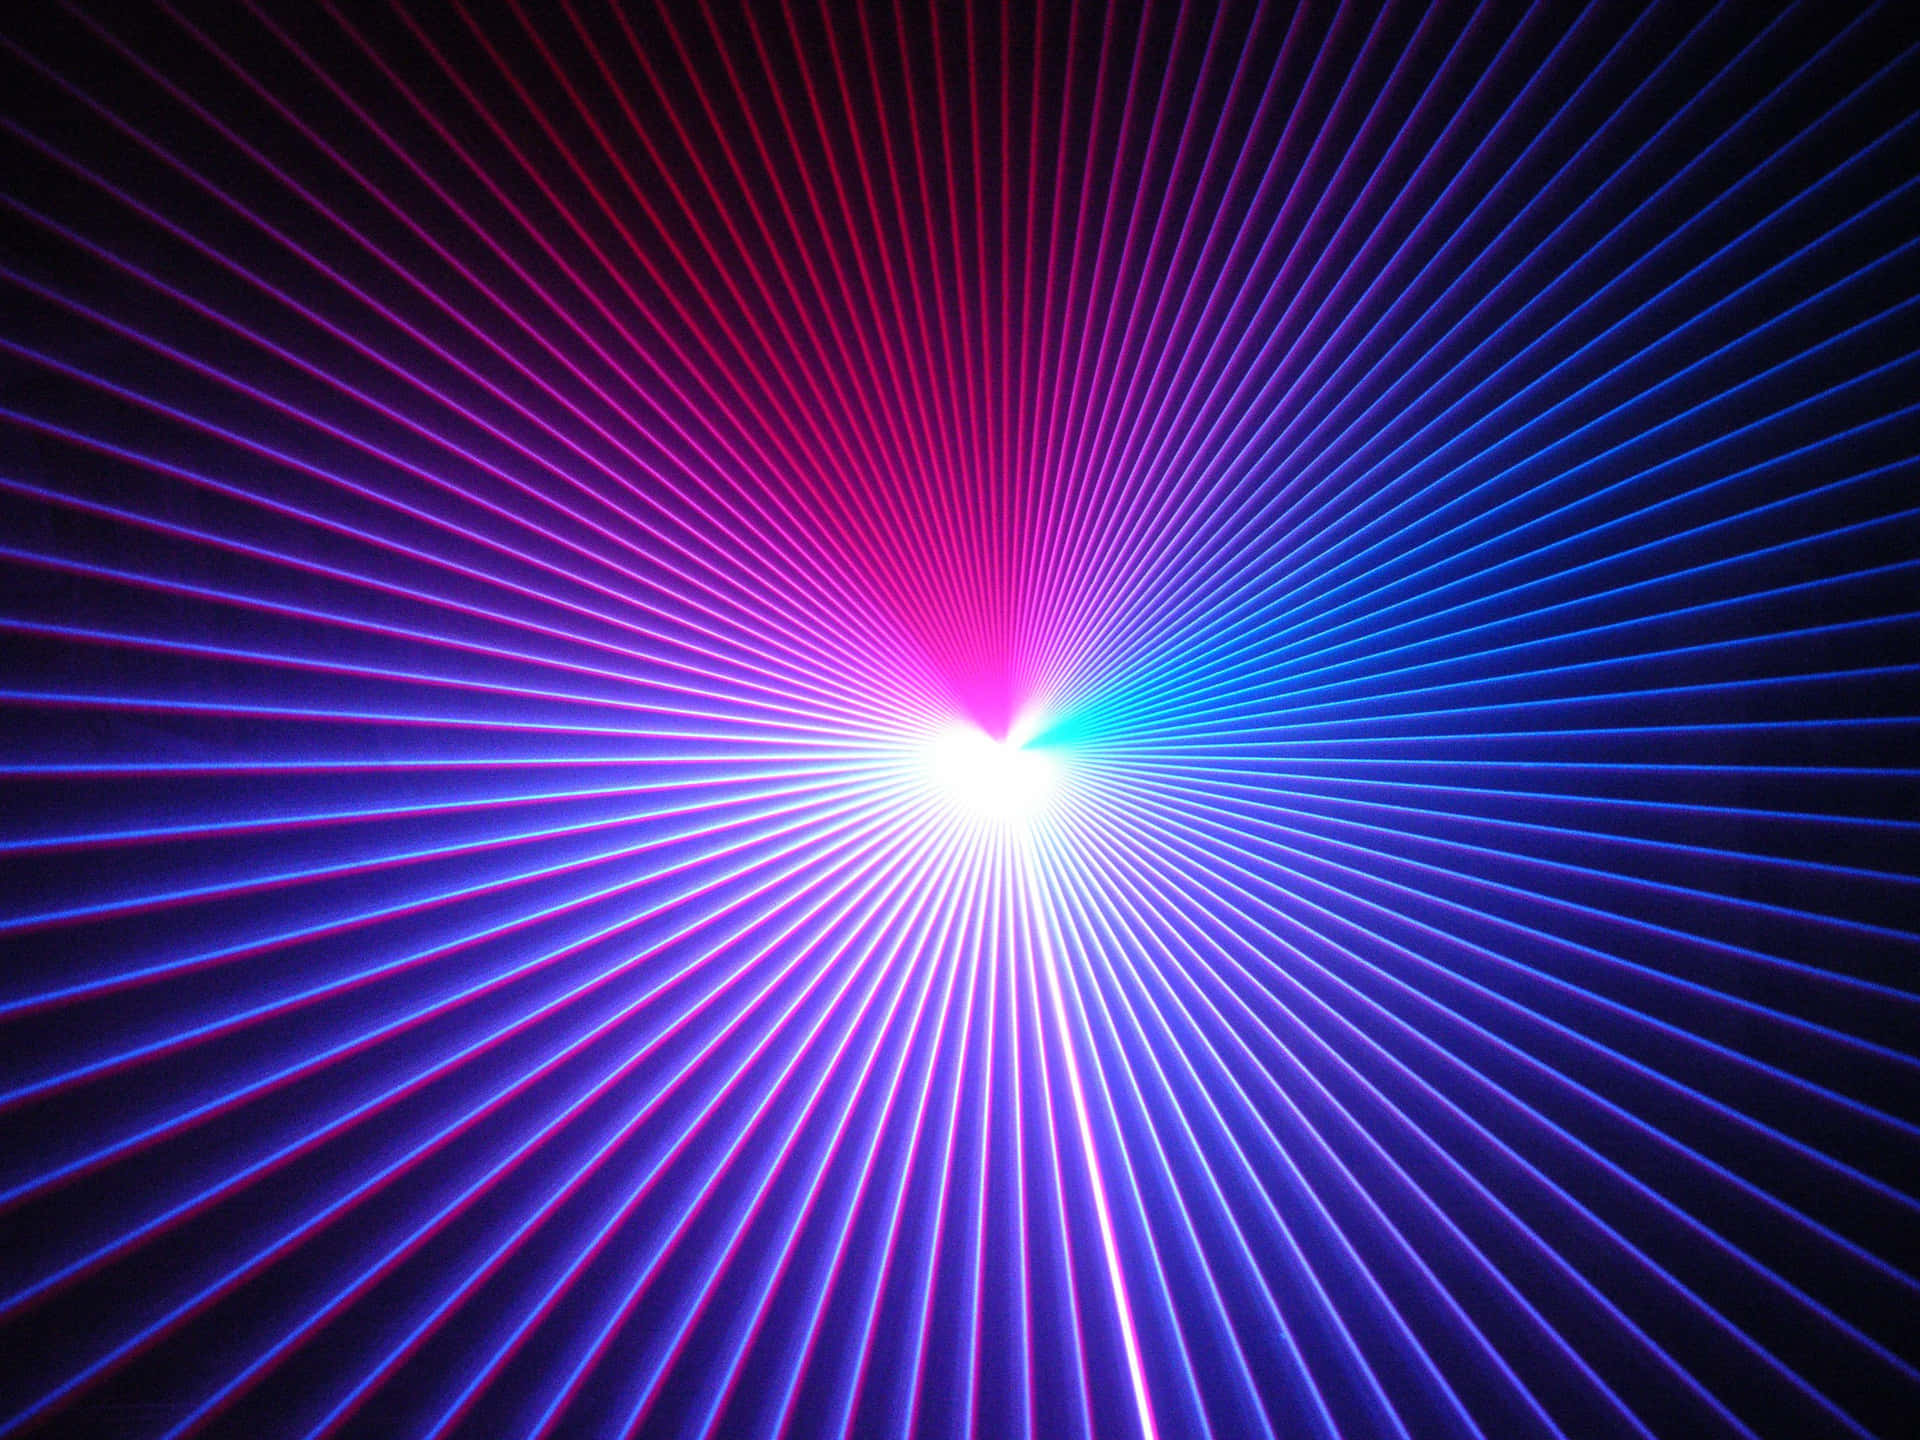 Vibrant Laser Light Display Wallpaper